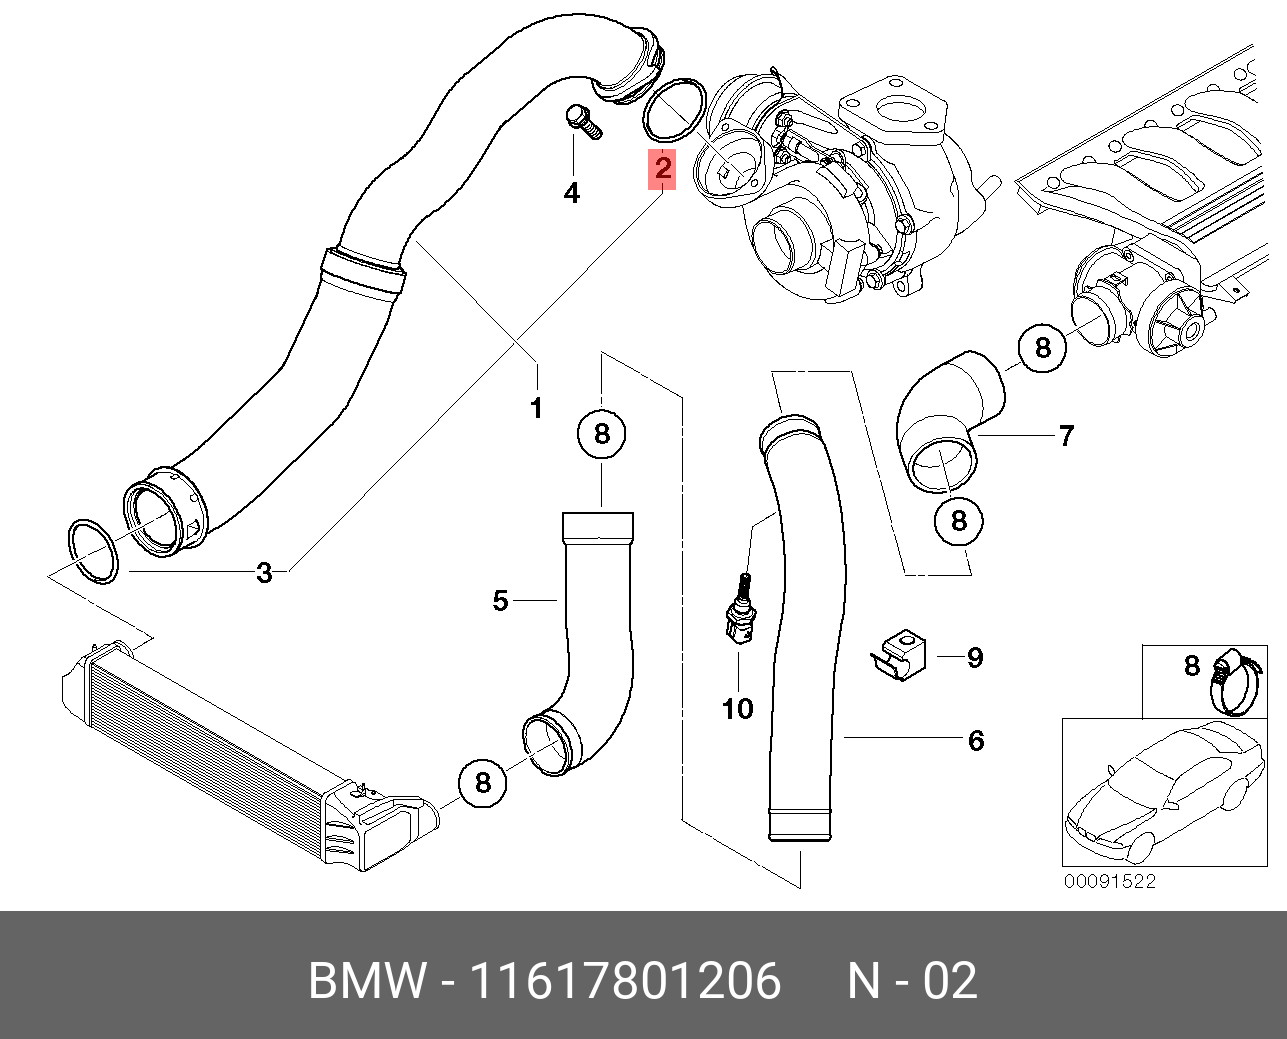 Bmw11 61 8 572 859 трубопровод наддувочного воздуха. BMW e46 запчасти vozduxa. Уплотнительное кольцо, трубка нагнетаемого воздуха БМВ е90. Датчик температуры наддувочного воздуха n47. Температура нагнетаемого воздуха